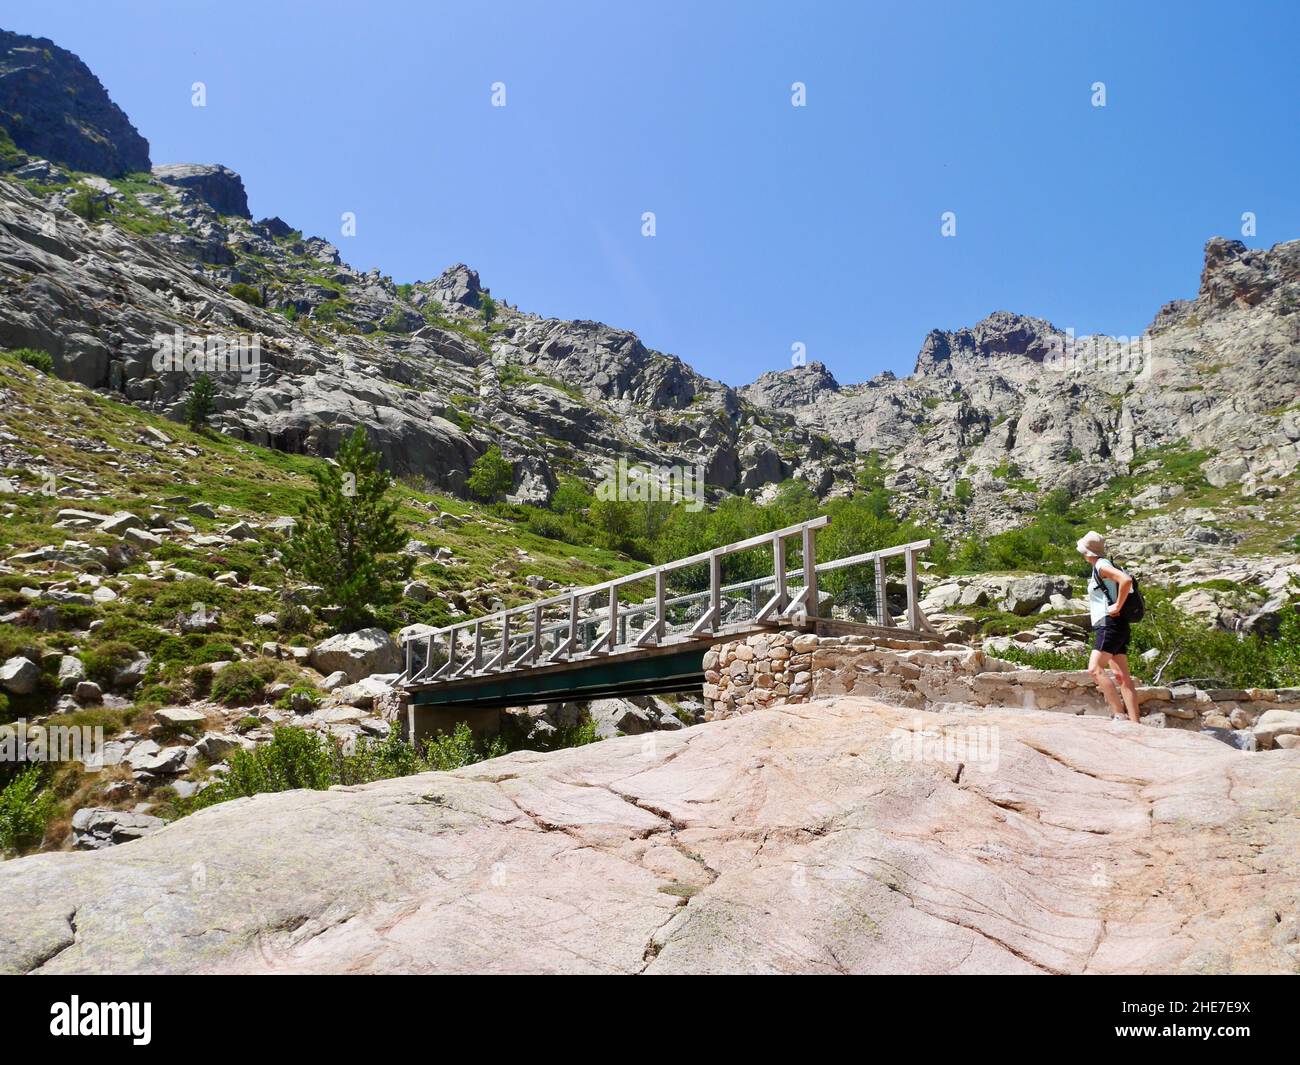 Randonneur traversant un pont en bois au-dessus du Golf dans des montagnes reculées sur le chemin de Paglia Orba, Corse, France. Banque D'Images